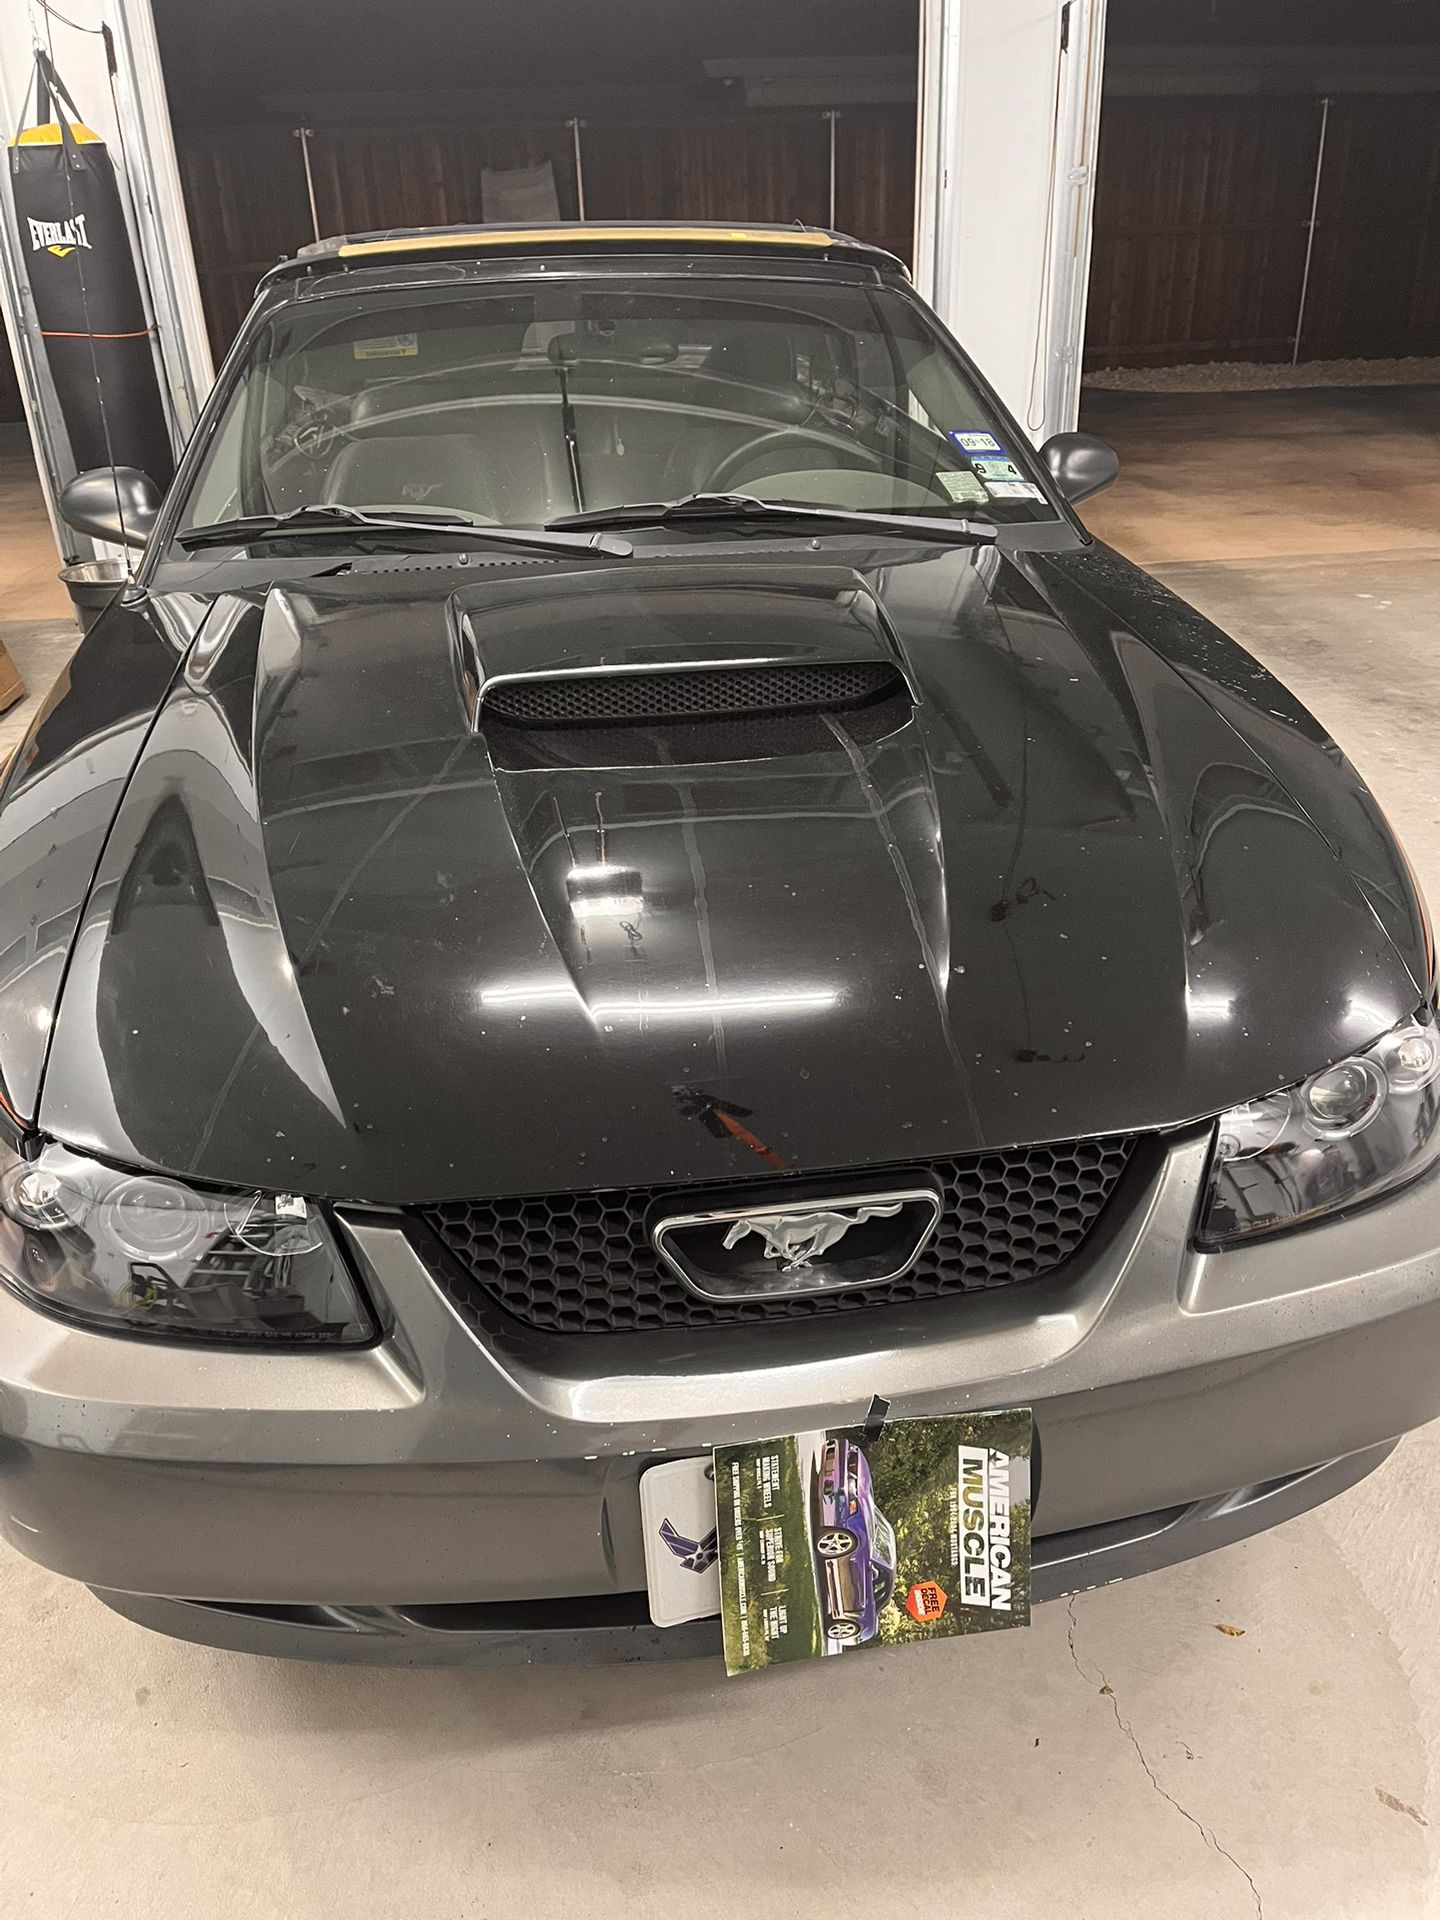 2002 Mustang GT Hood and Spoiler